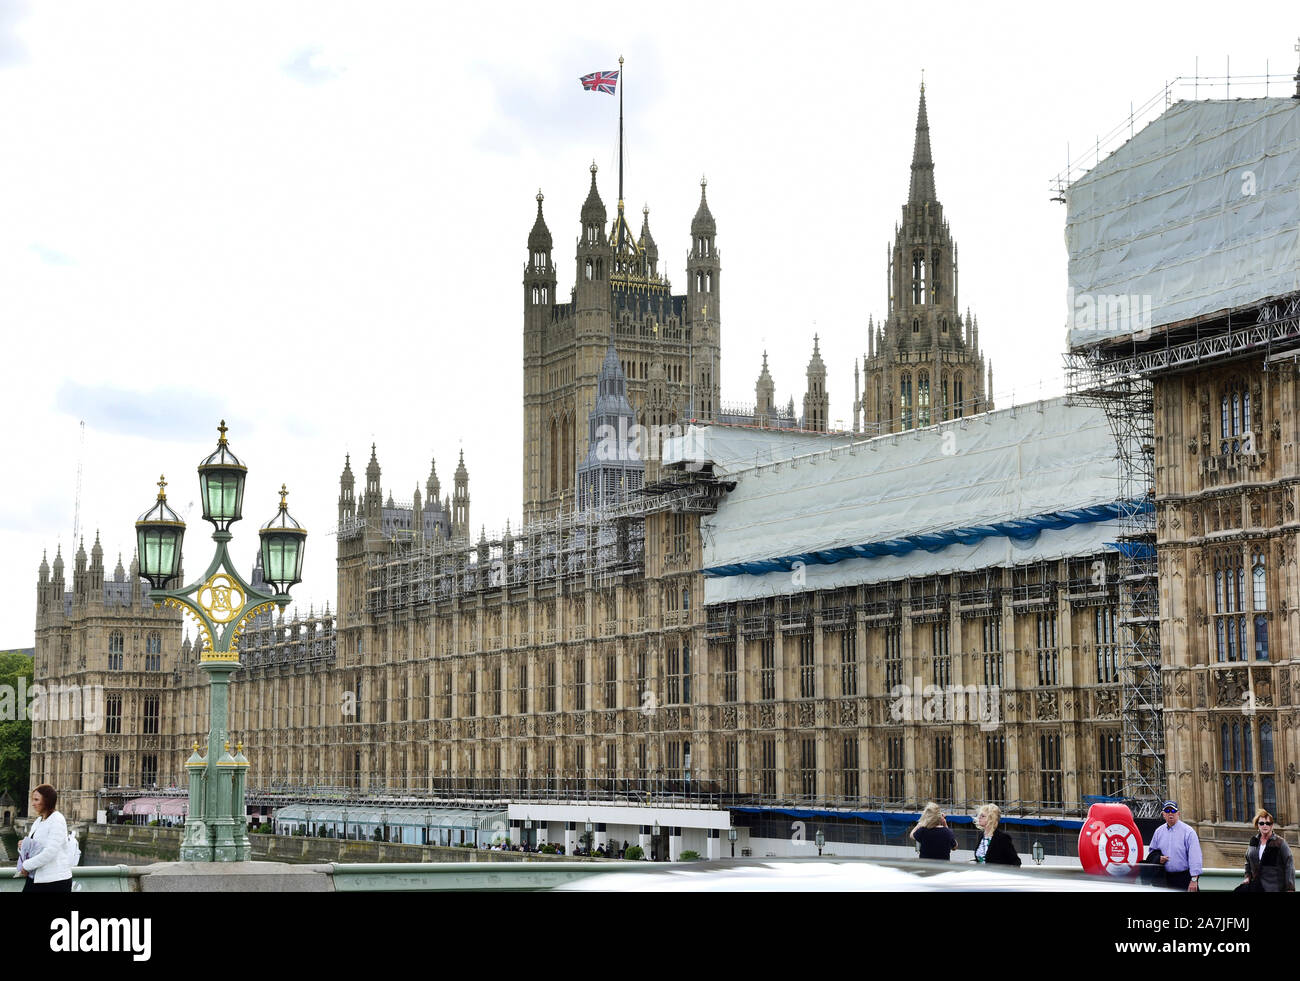 04 settembre 2019, la Gran Bretagna, Londra: Vista del Palazzo di Westminster, il palazzo del parlamento con la torre di Victoria (in background). Il Palazzo di Westminster è stata ricostruita dopo un incendio nel 1834 negli anni 1840-1888 in stile neo-gotico nel vecchio posto. Foto: Waltraud Grubitzsch/dpa Foto Stock